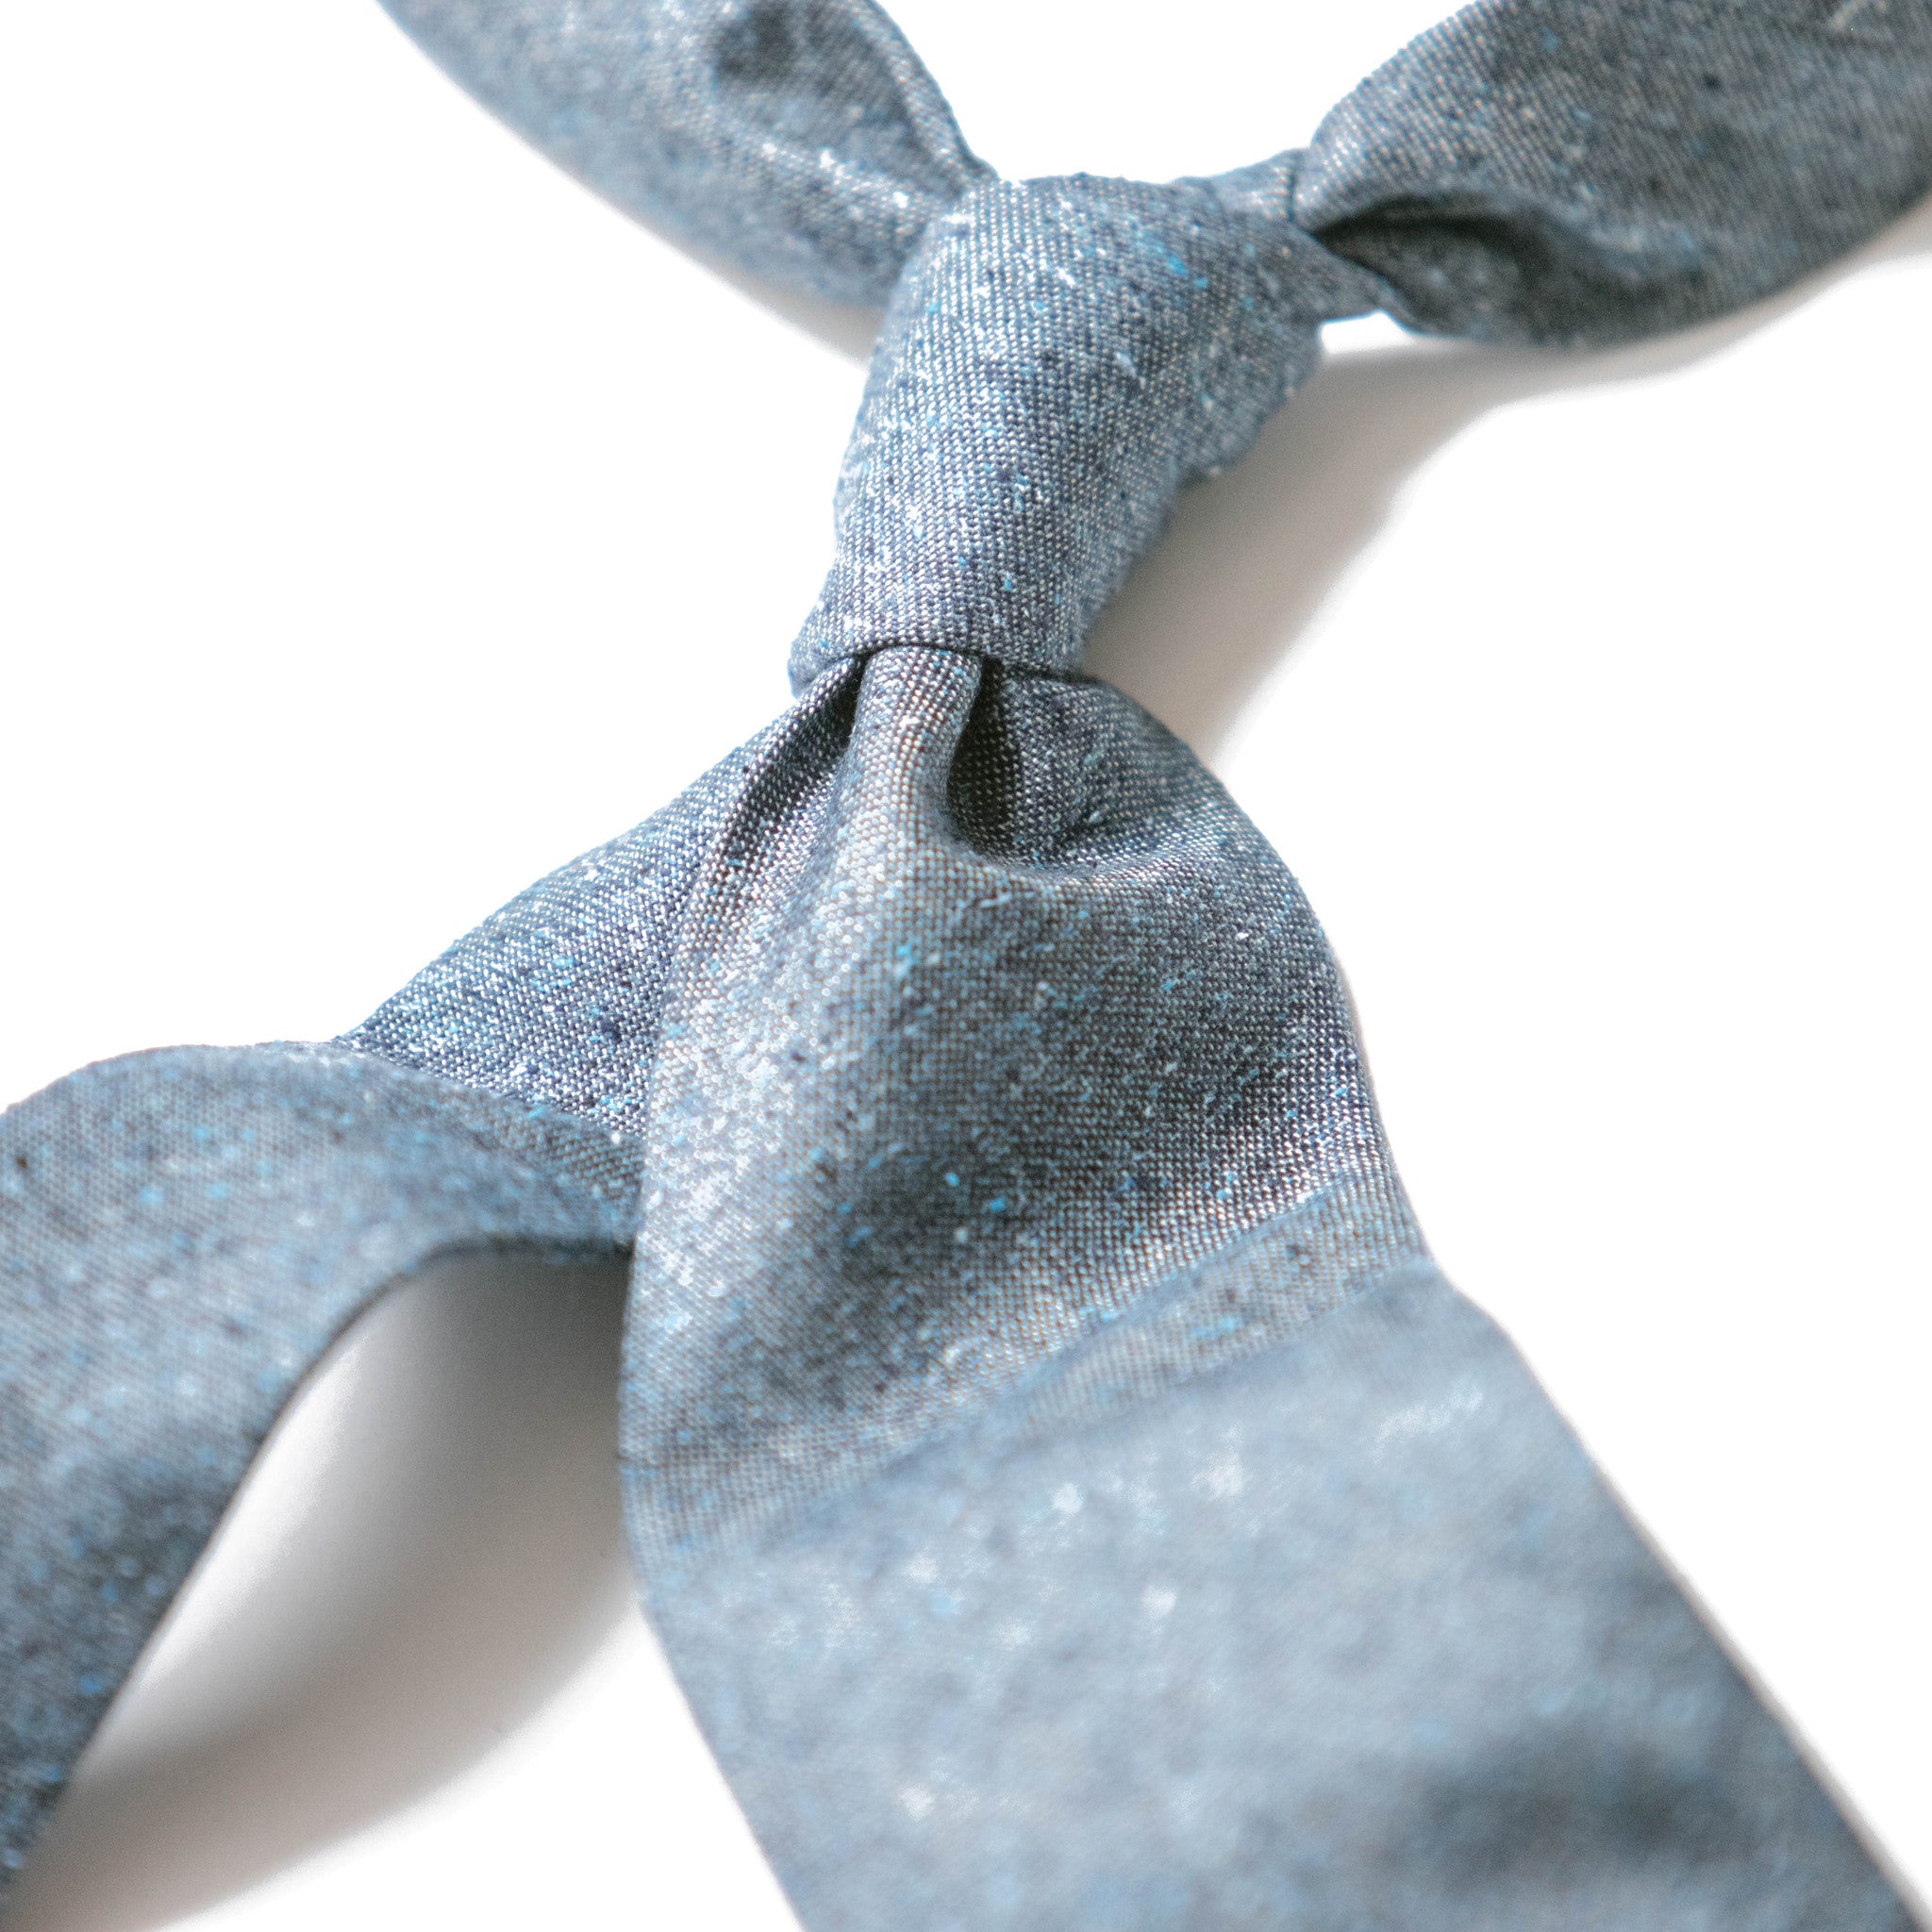 Speckled Dark Blue Silk and Cotton Tie